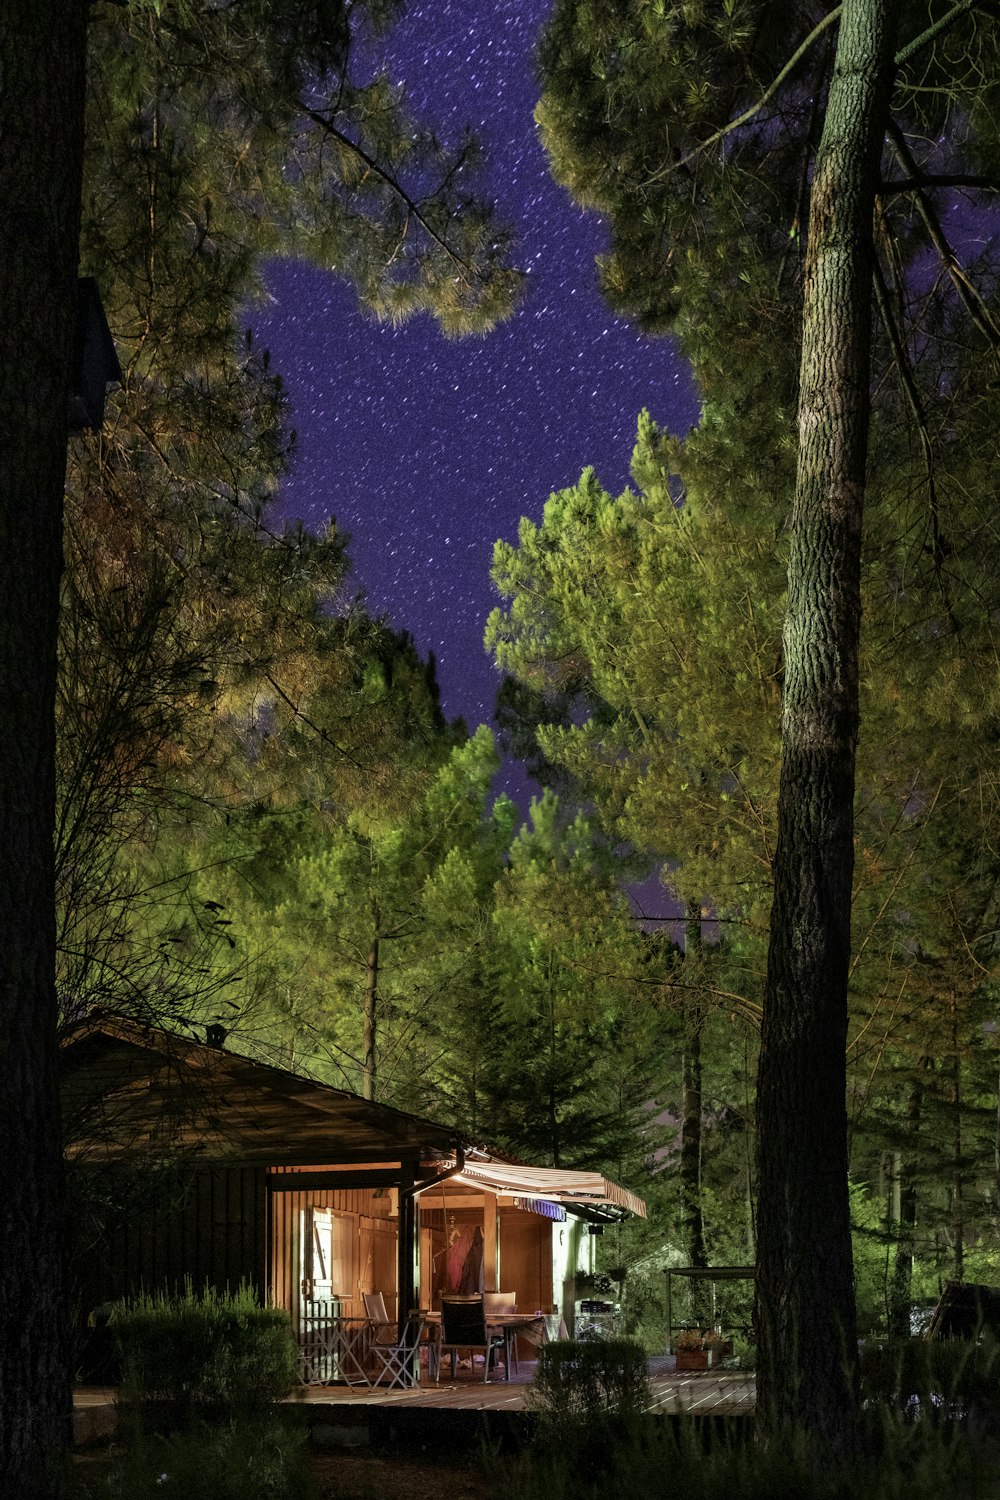 Una cabaña en el bosque por la noche con estrellas en el cielo